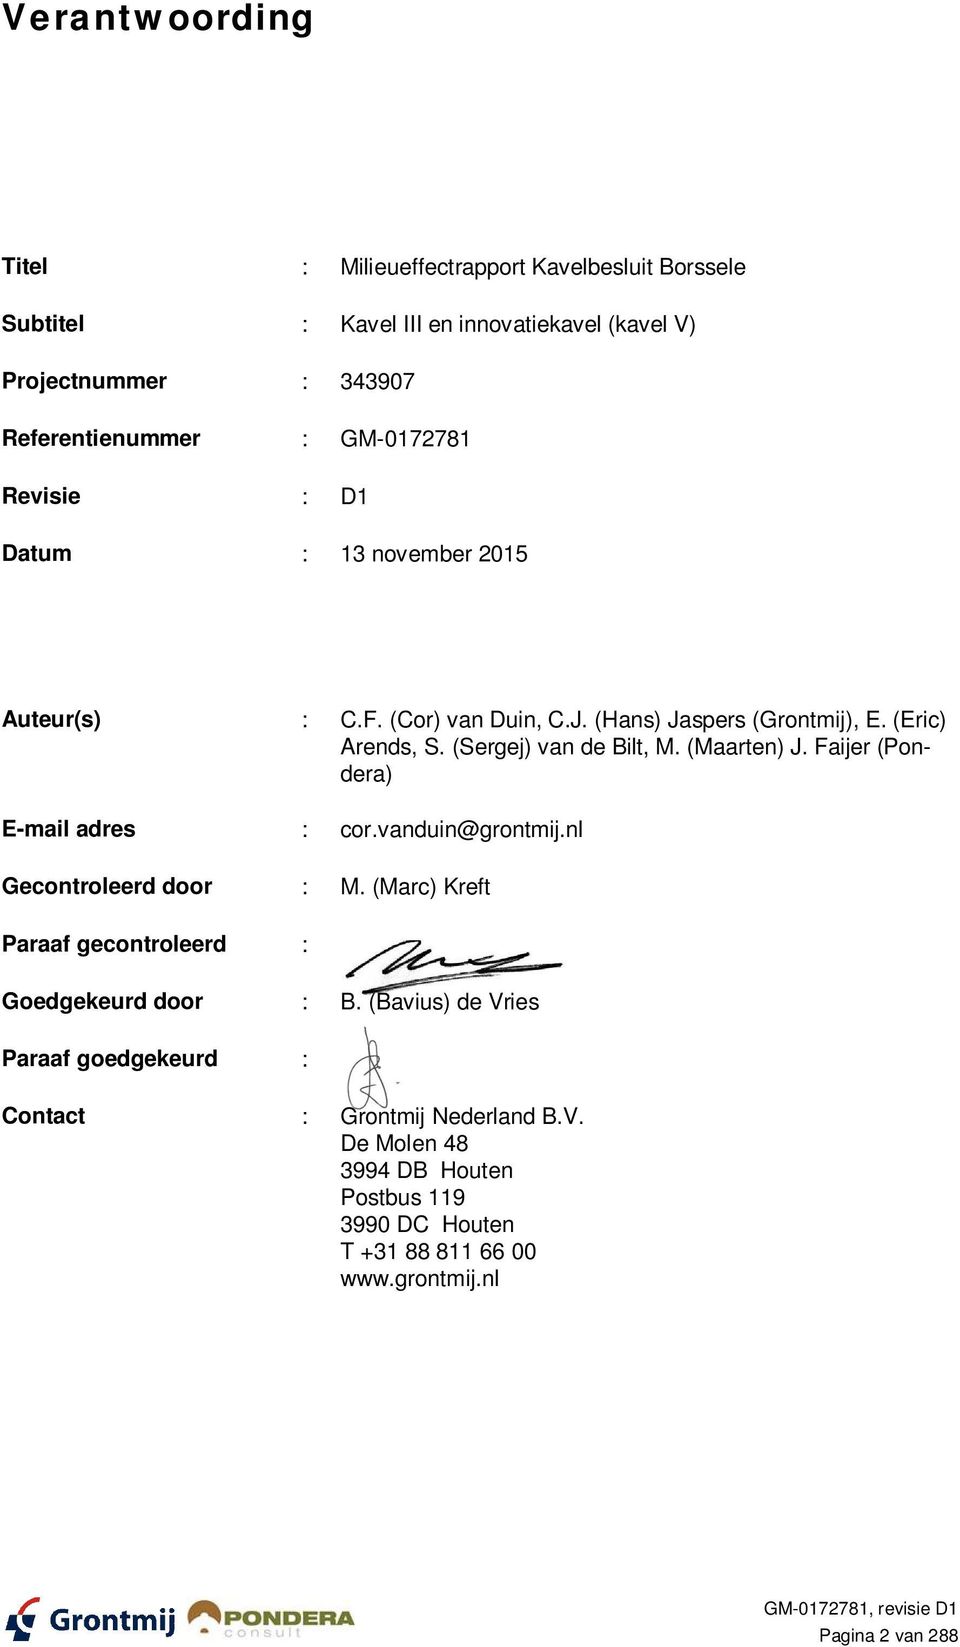 (Maarten) J. Faijer (Pondera) E-mail adres : cor.vanduin@grontmij.nl Gecontroleerd door : M. (Marc) Kreft Paraaf gecontroleerd : Goedgekeurd door : B.